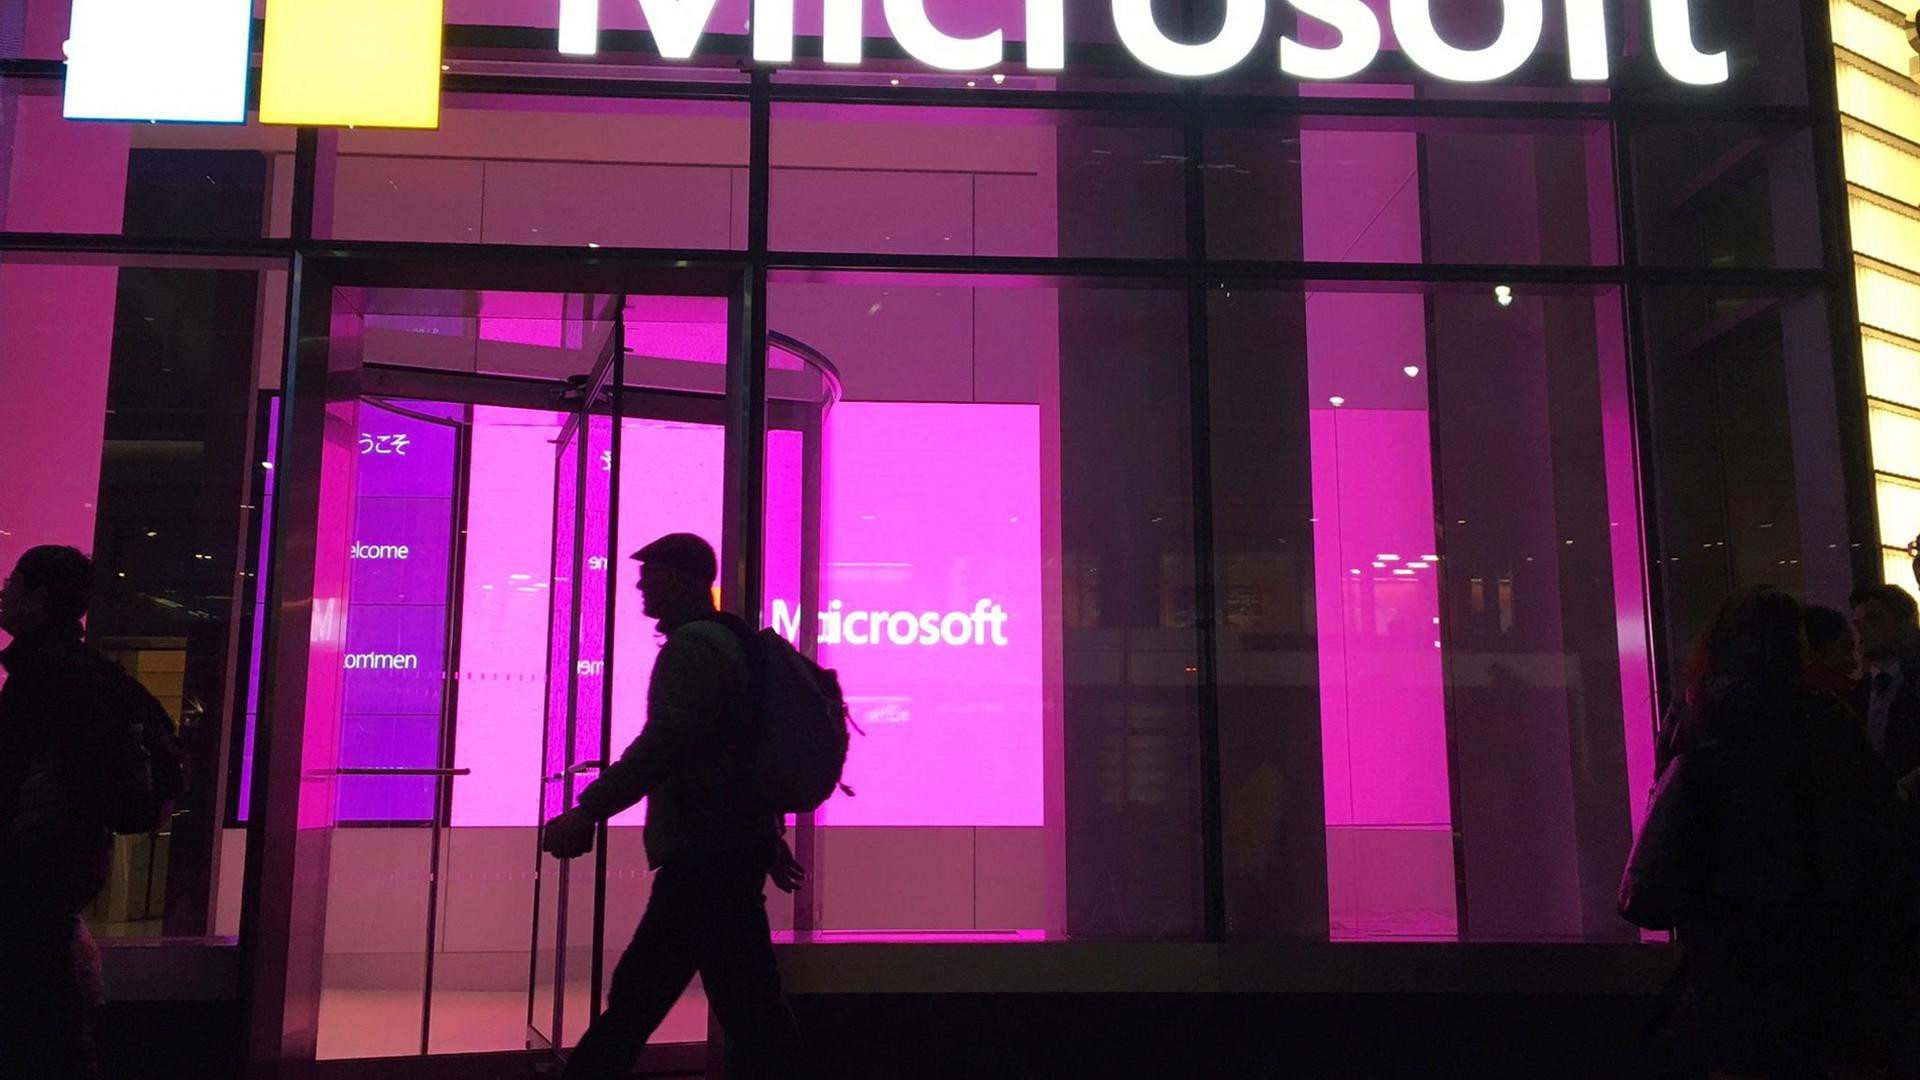 Der Boom des Cloud-Geschäfts bringt dem Software-Riesen Microsoft starke Geschäftszuwächse ein.